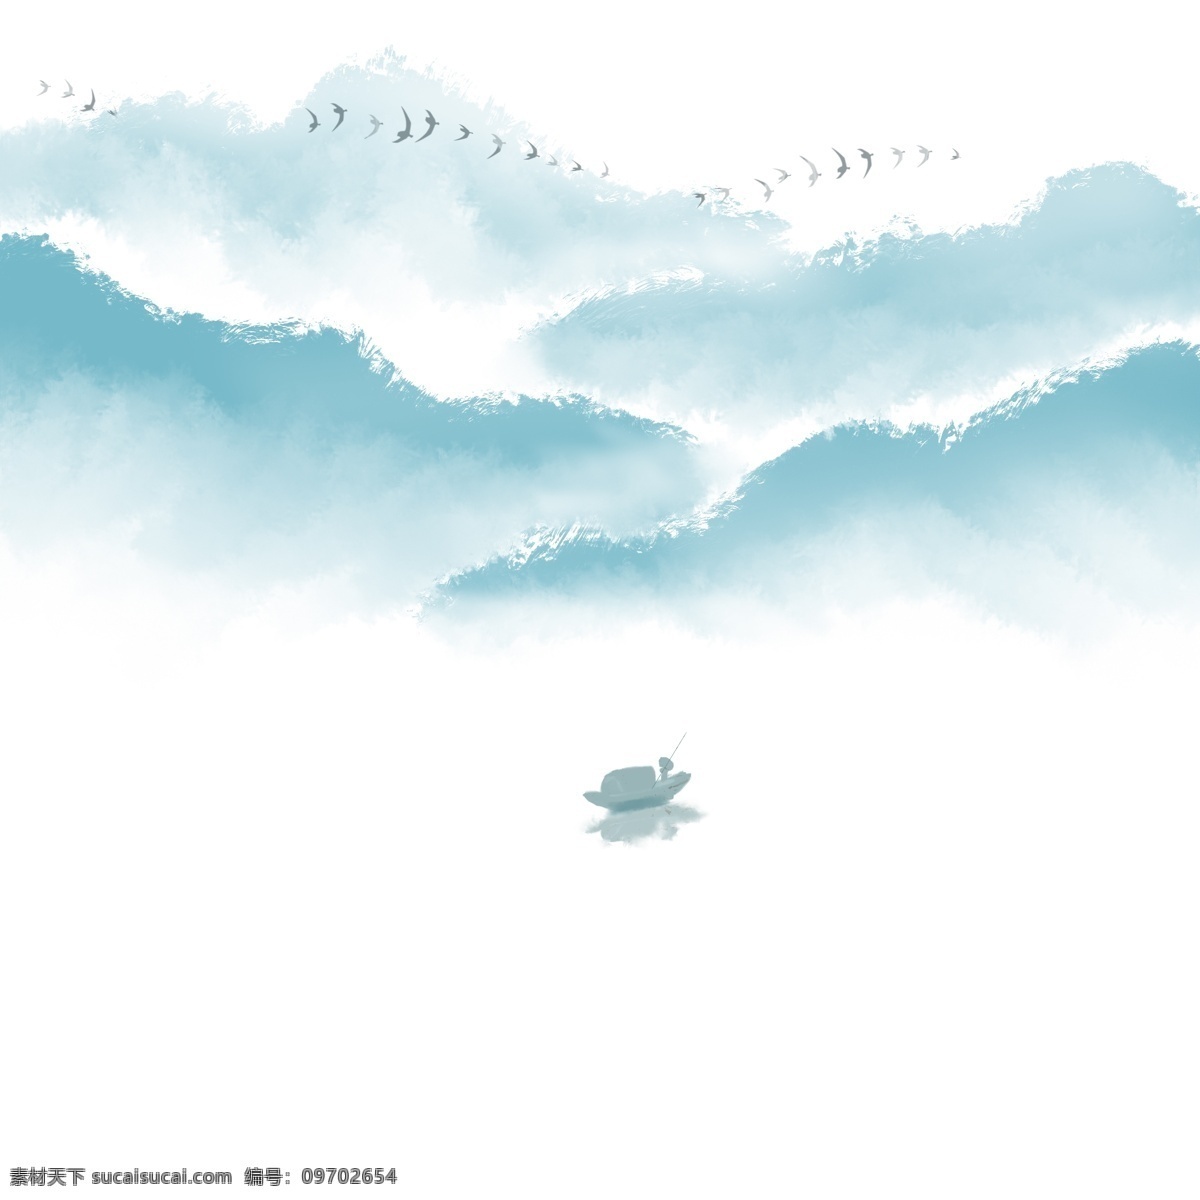 卡通 手绘 中国 风 山峰 划船 人 卡通手绘 中国风 水彩 水墨 小清新 唯美 山 划船的人 远处 飞行 一群 鸟